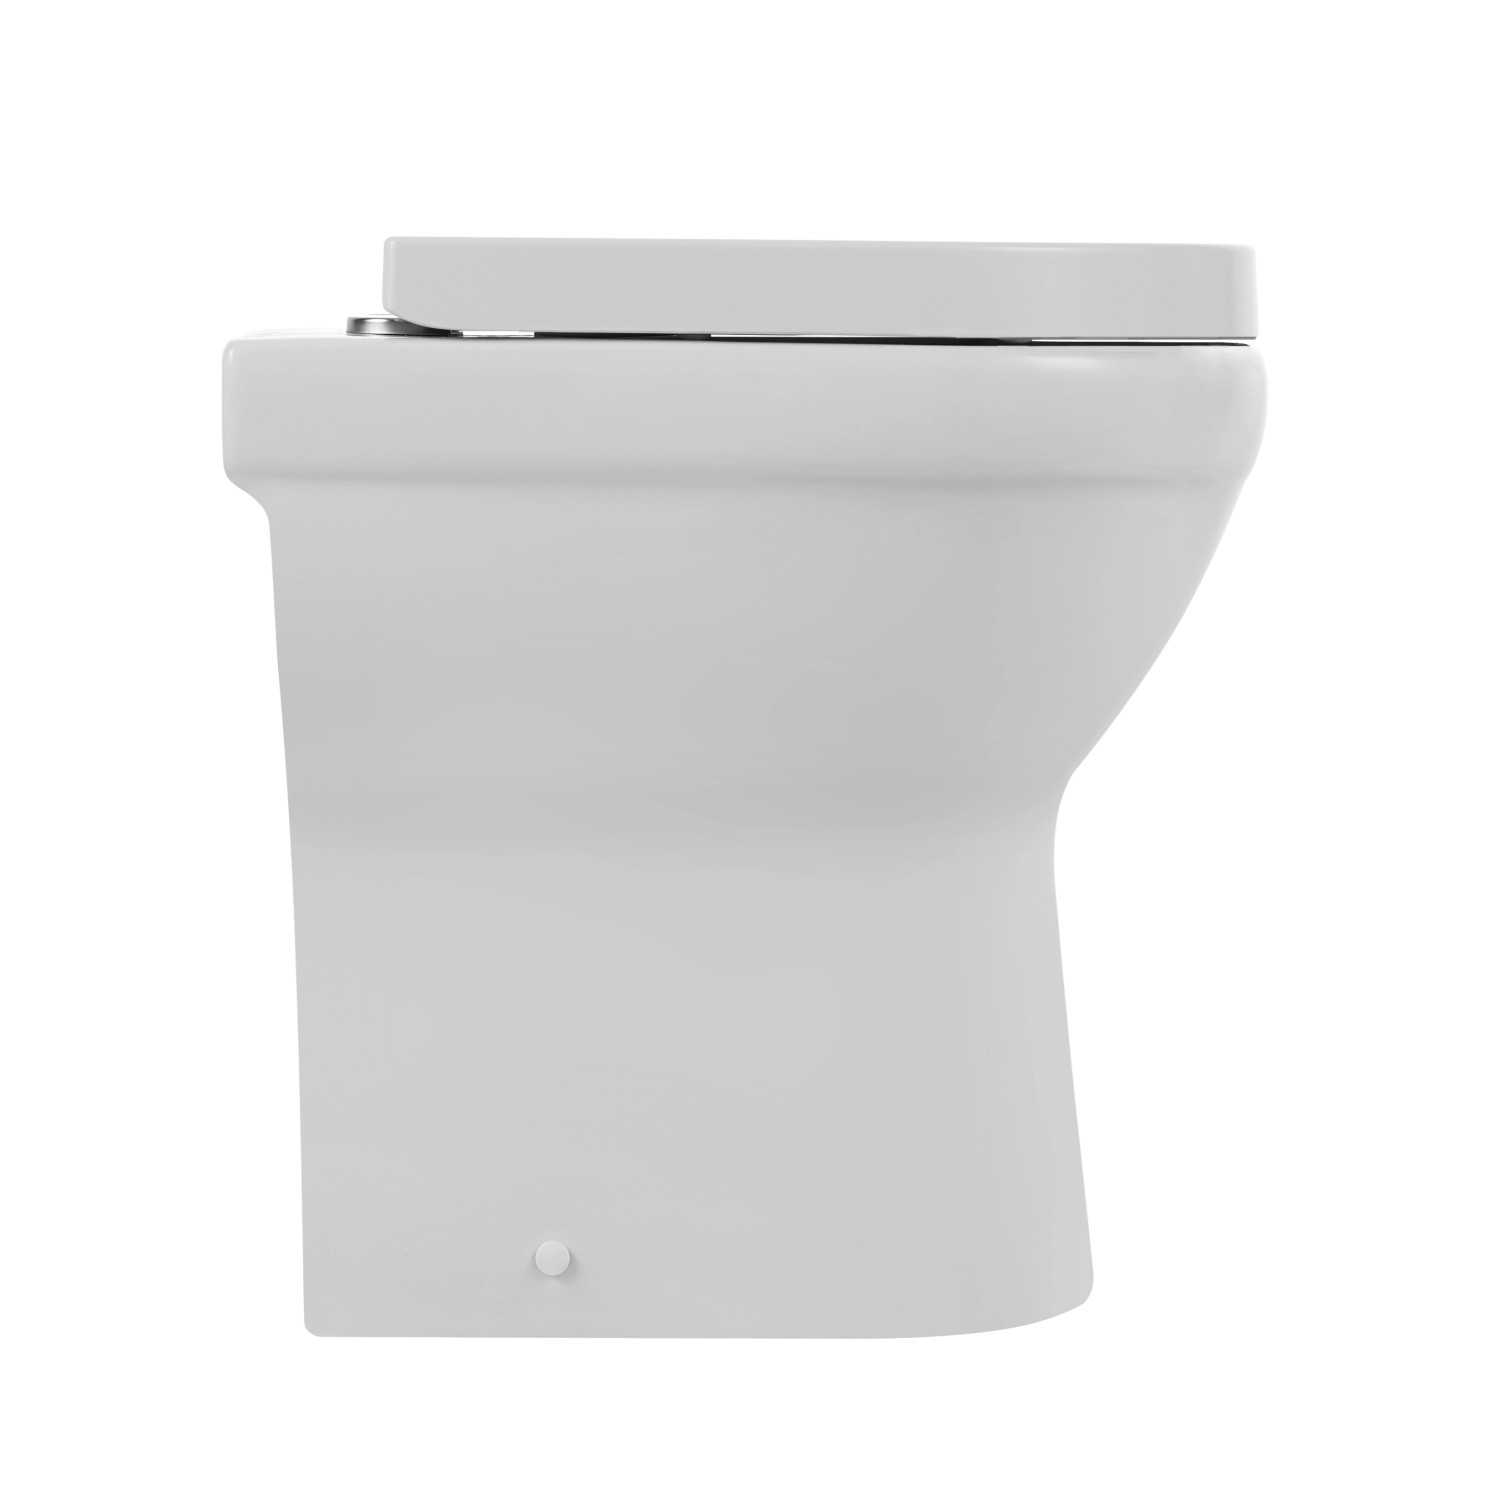 Verosan Tiefspül Stand-WC Cozy Spülrandlos inkl. Sitz Weiß erhöht kaufen  bei OBI